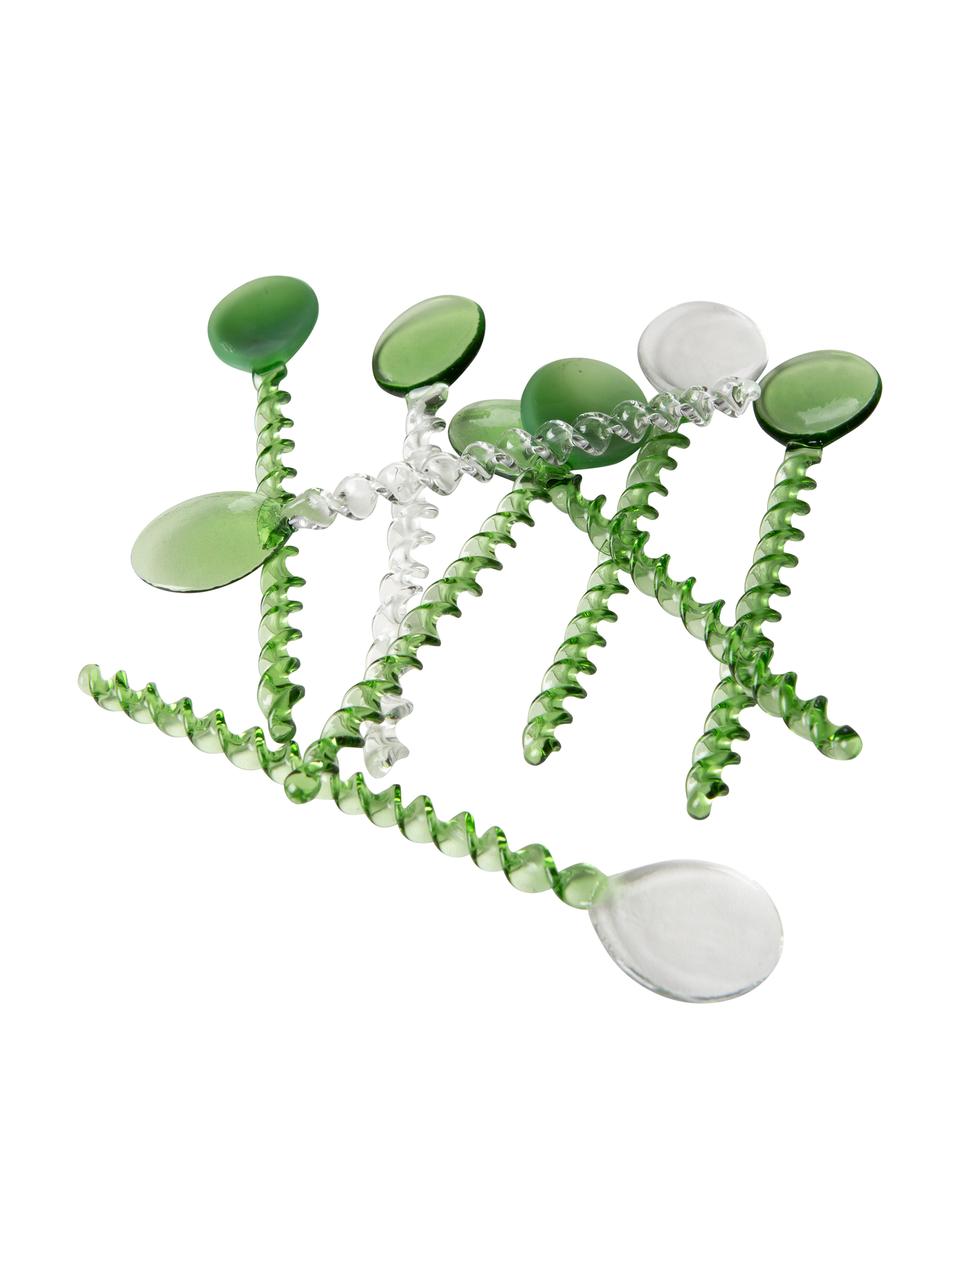 Petites cuillères à café en verre Emeralds, 4 pièces, Verre, Vert, transparent, long. 12 cm